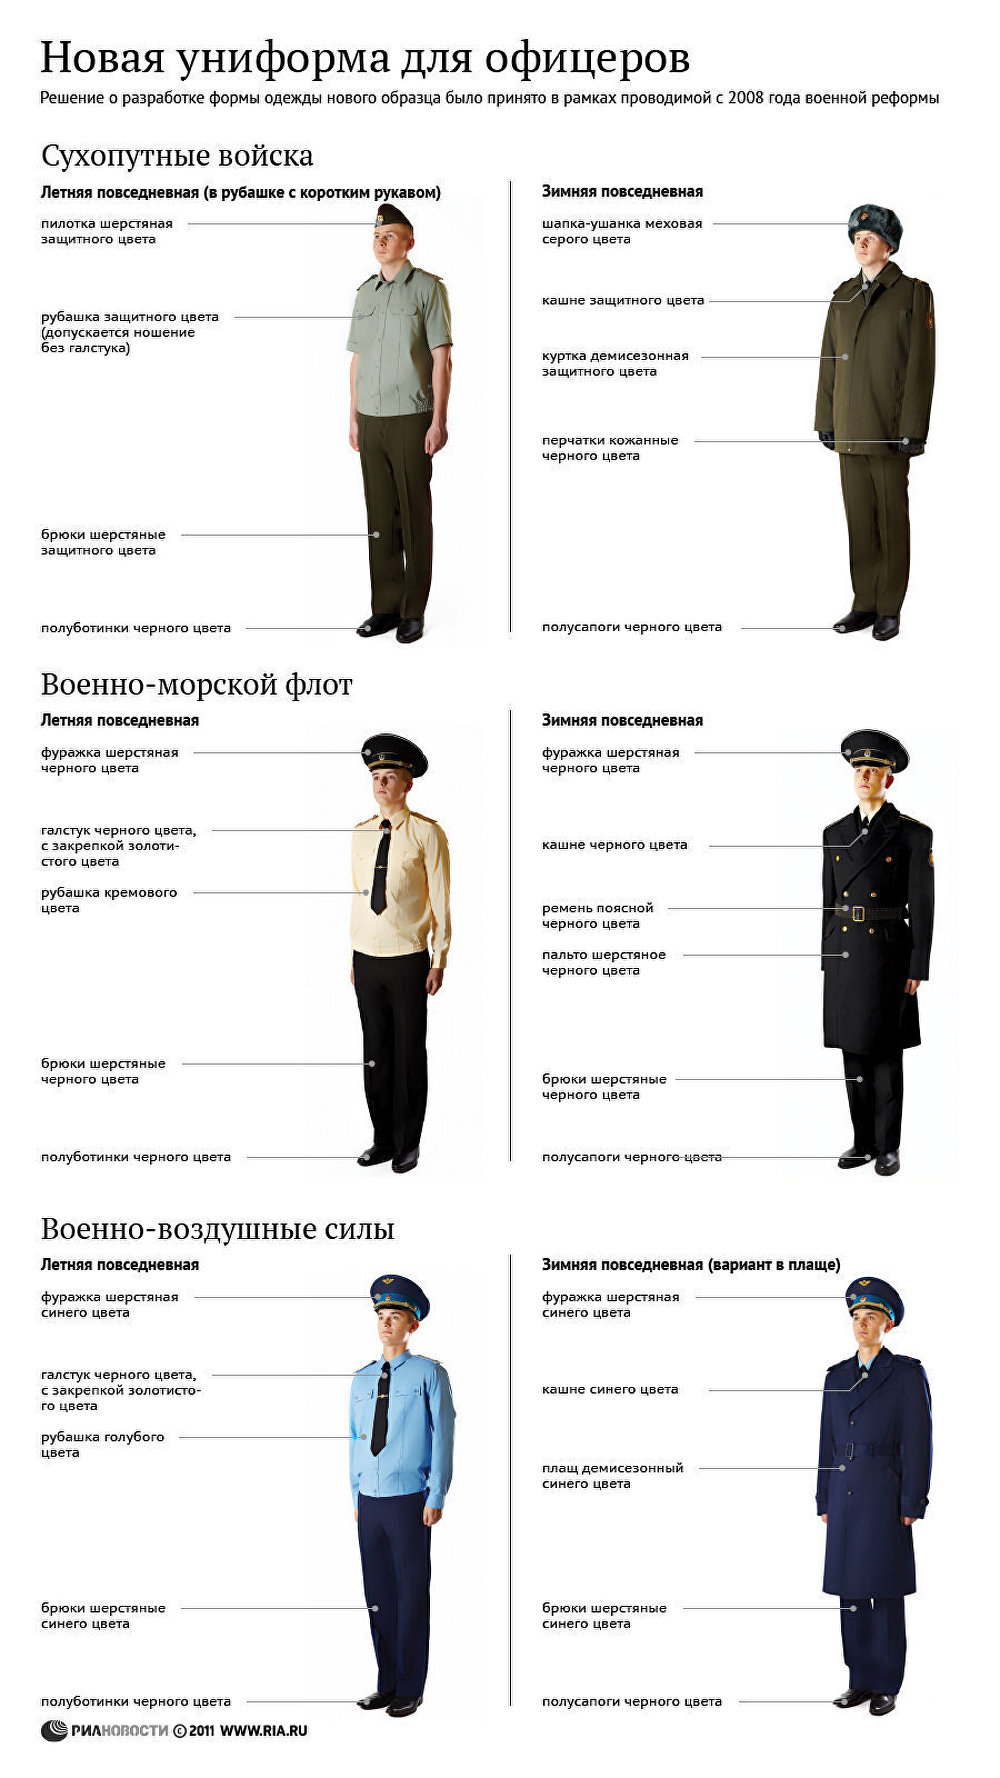 Образцы военной формы одежды вс